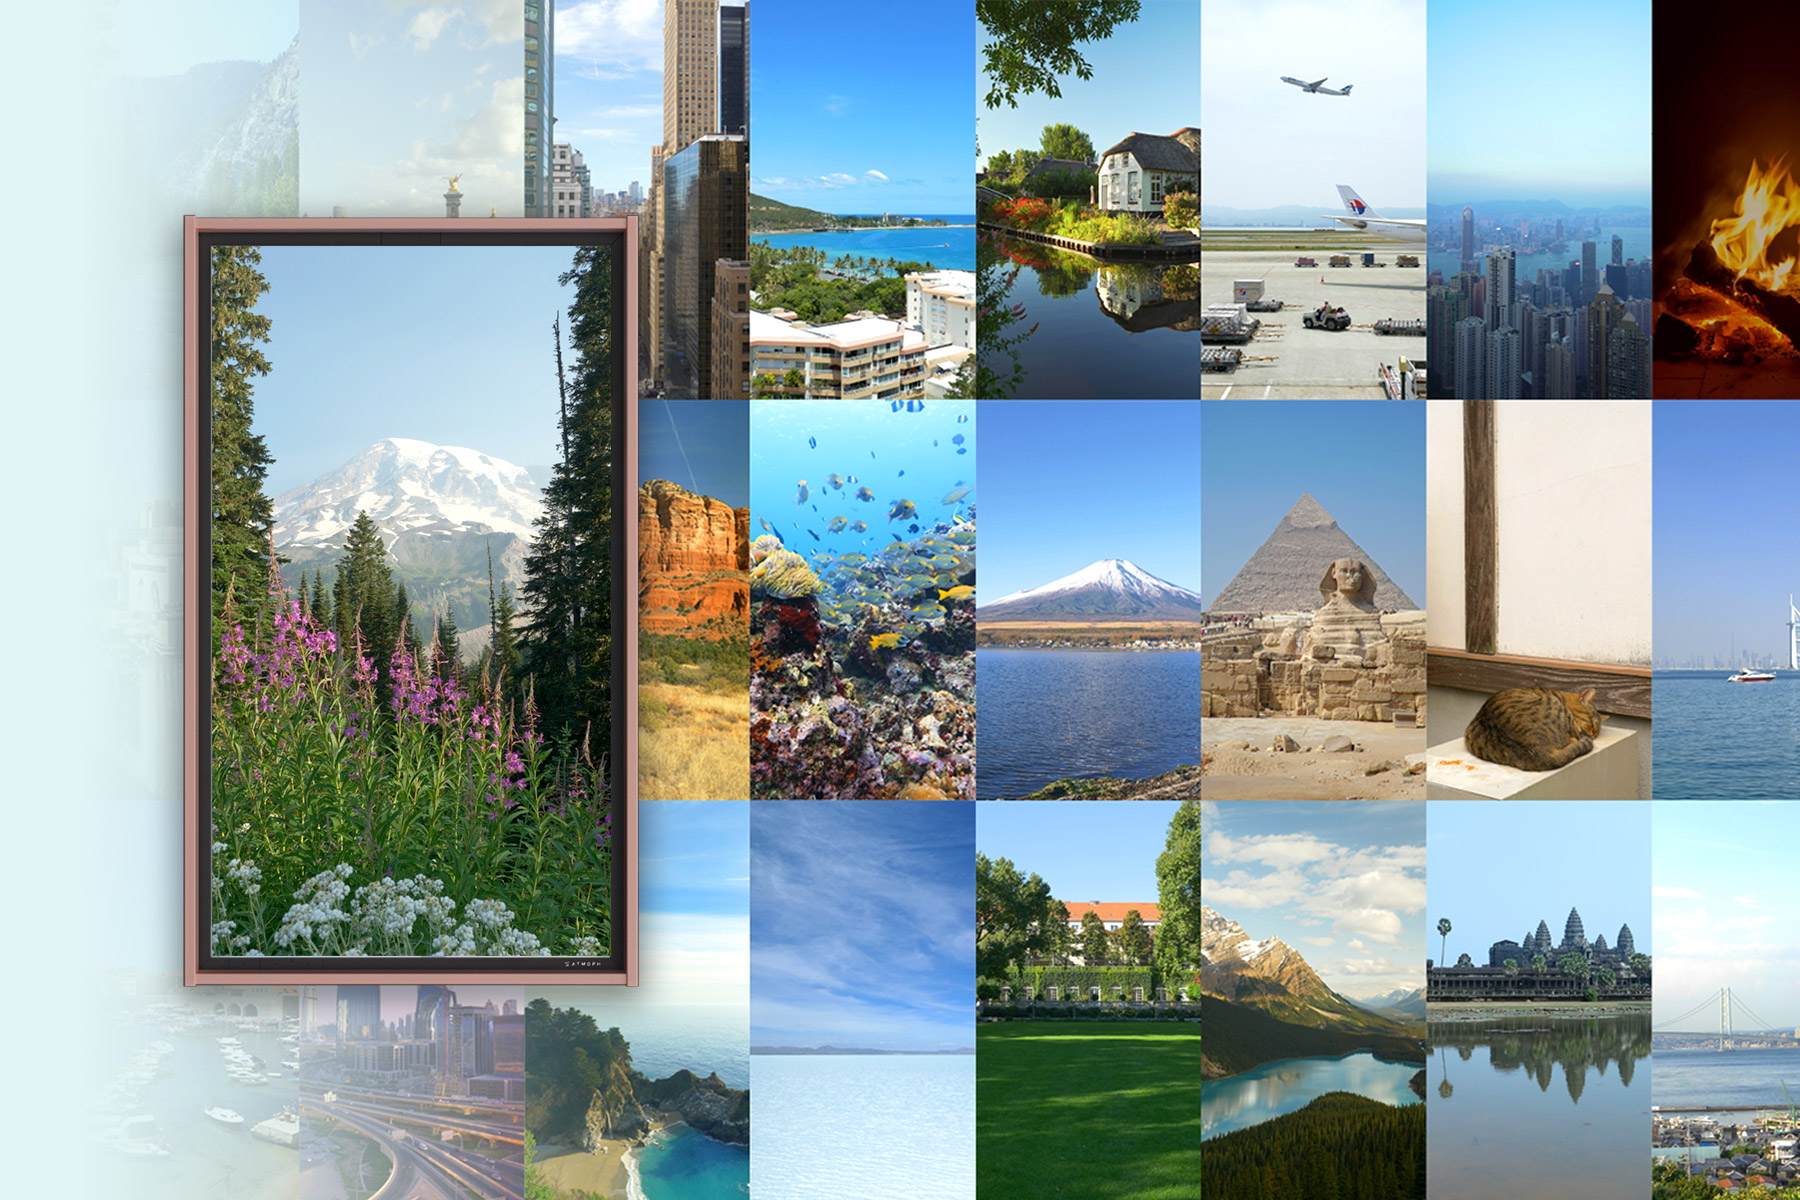 5年をかけて撮影を重ねた 全世界1 000ヶ所以上の風景ラインナップが見られる Atmoph Window Views をオープン 風景 をシェアすると 旅行券10万円が当たるキャンペーンも Atmophのプレスリリース